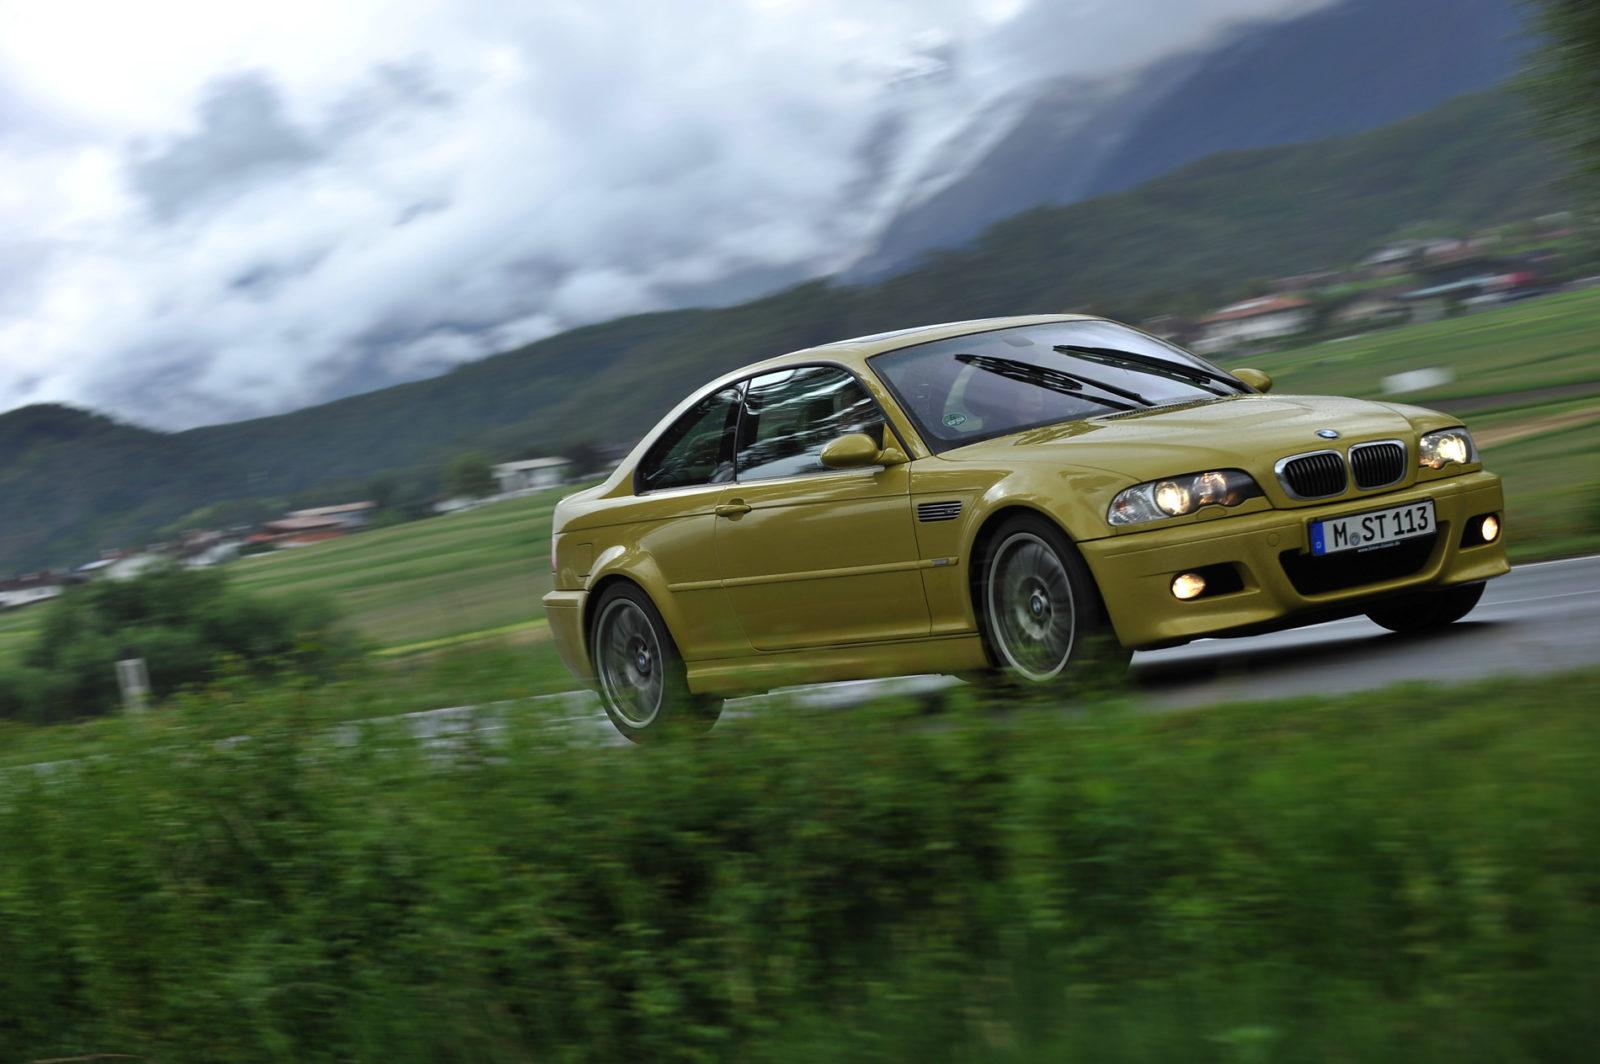 BMW E46 M3 phoenix yellow 25 750x499